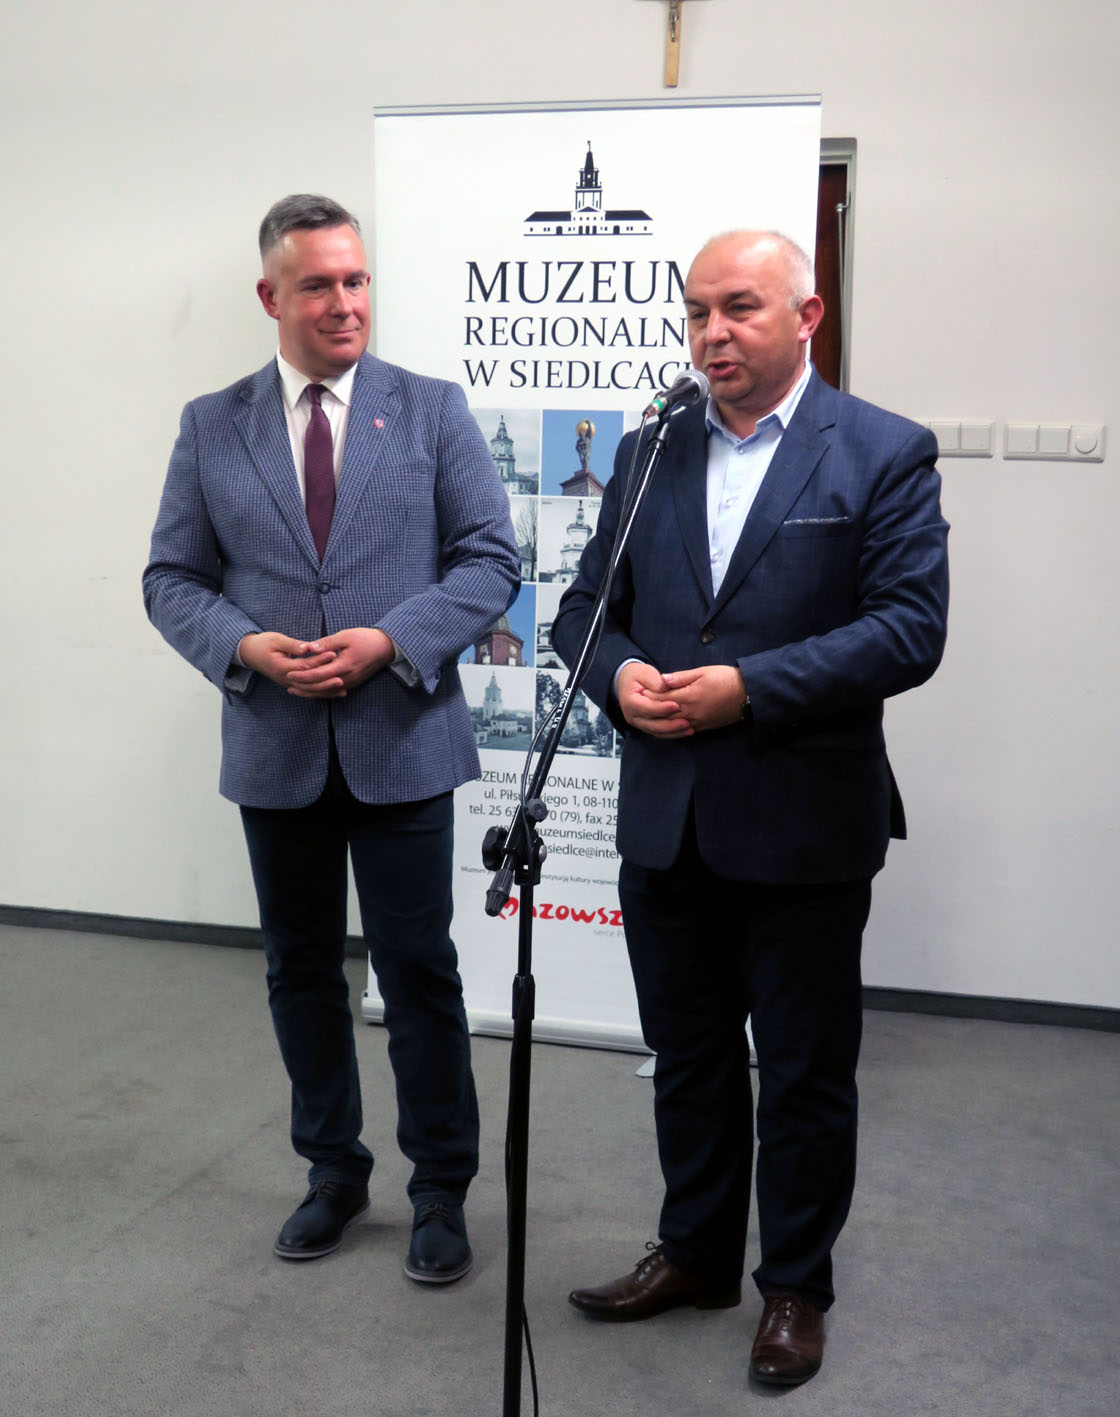 Dwóch mężczyzn ubranych w garnitury stojących przy mikrofonie.